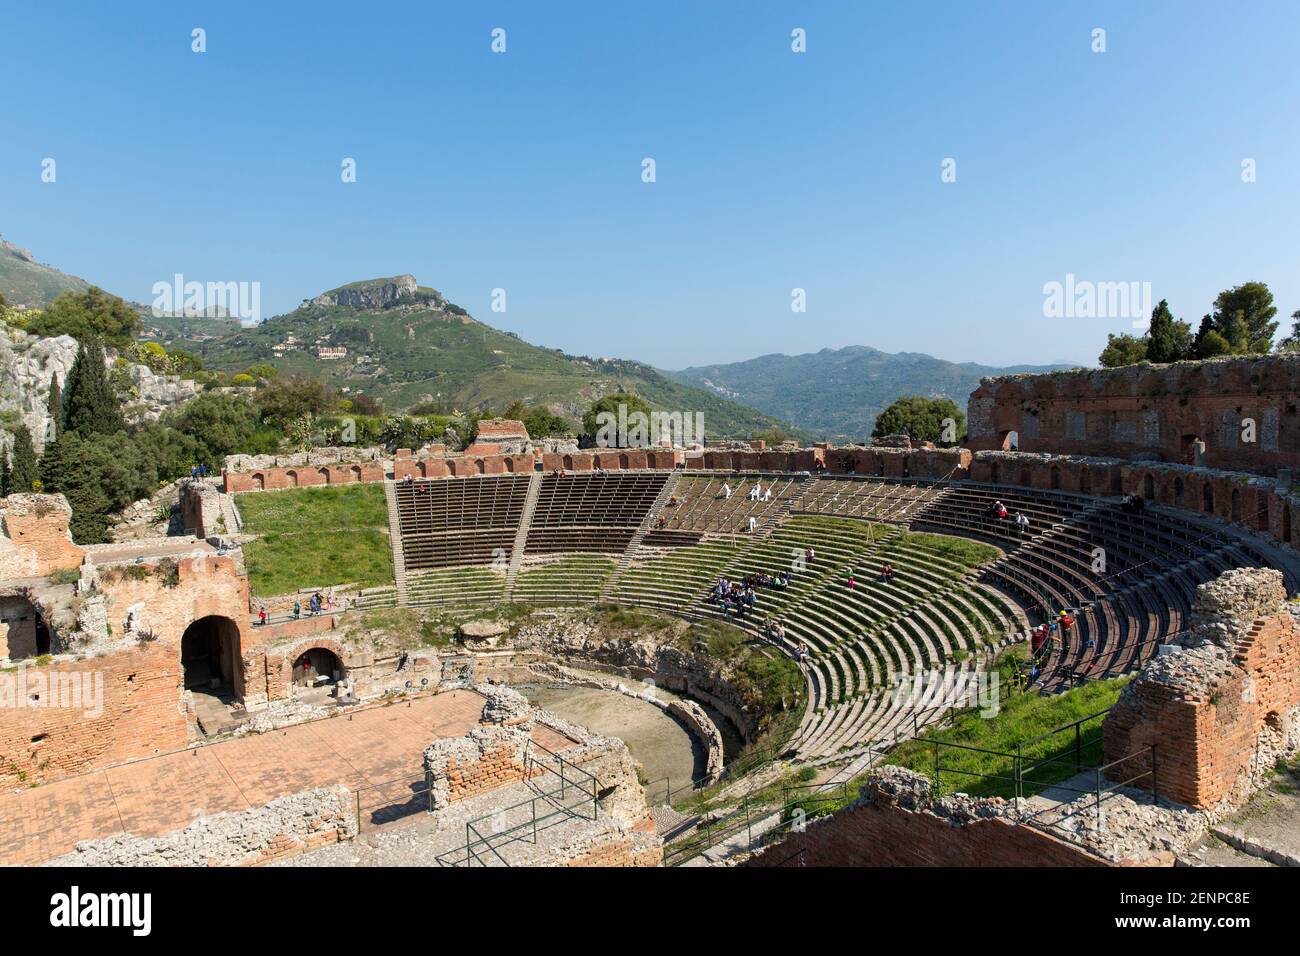 Italia, Sicilia, Taormina, il Teatro Greco, con un diametro di 120 metri (390 piedi) questo teatro è il secondo più grande del suo genere in Sicilia Foto Stock